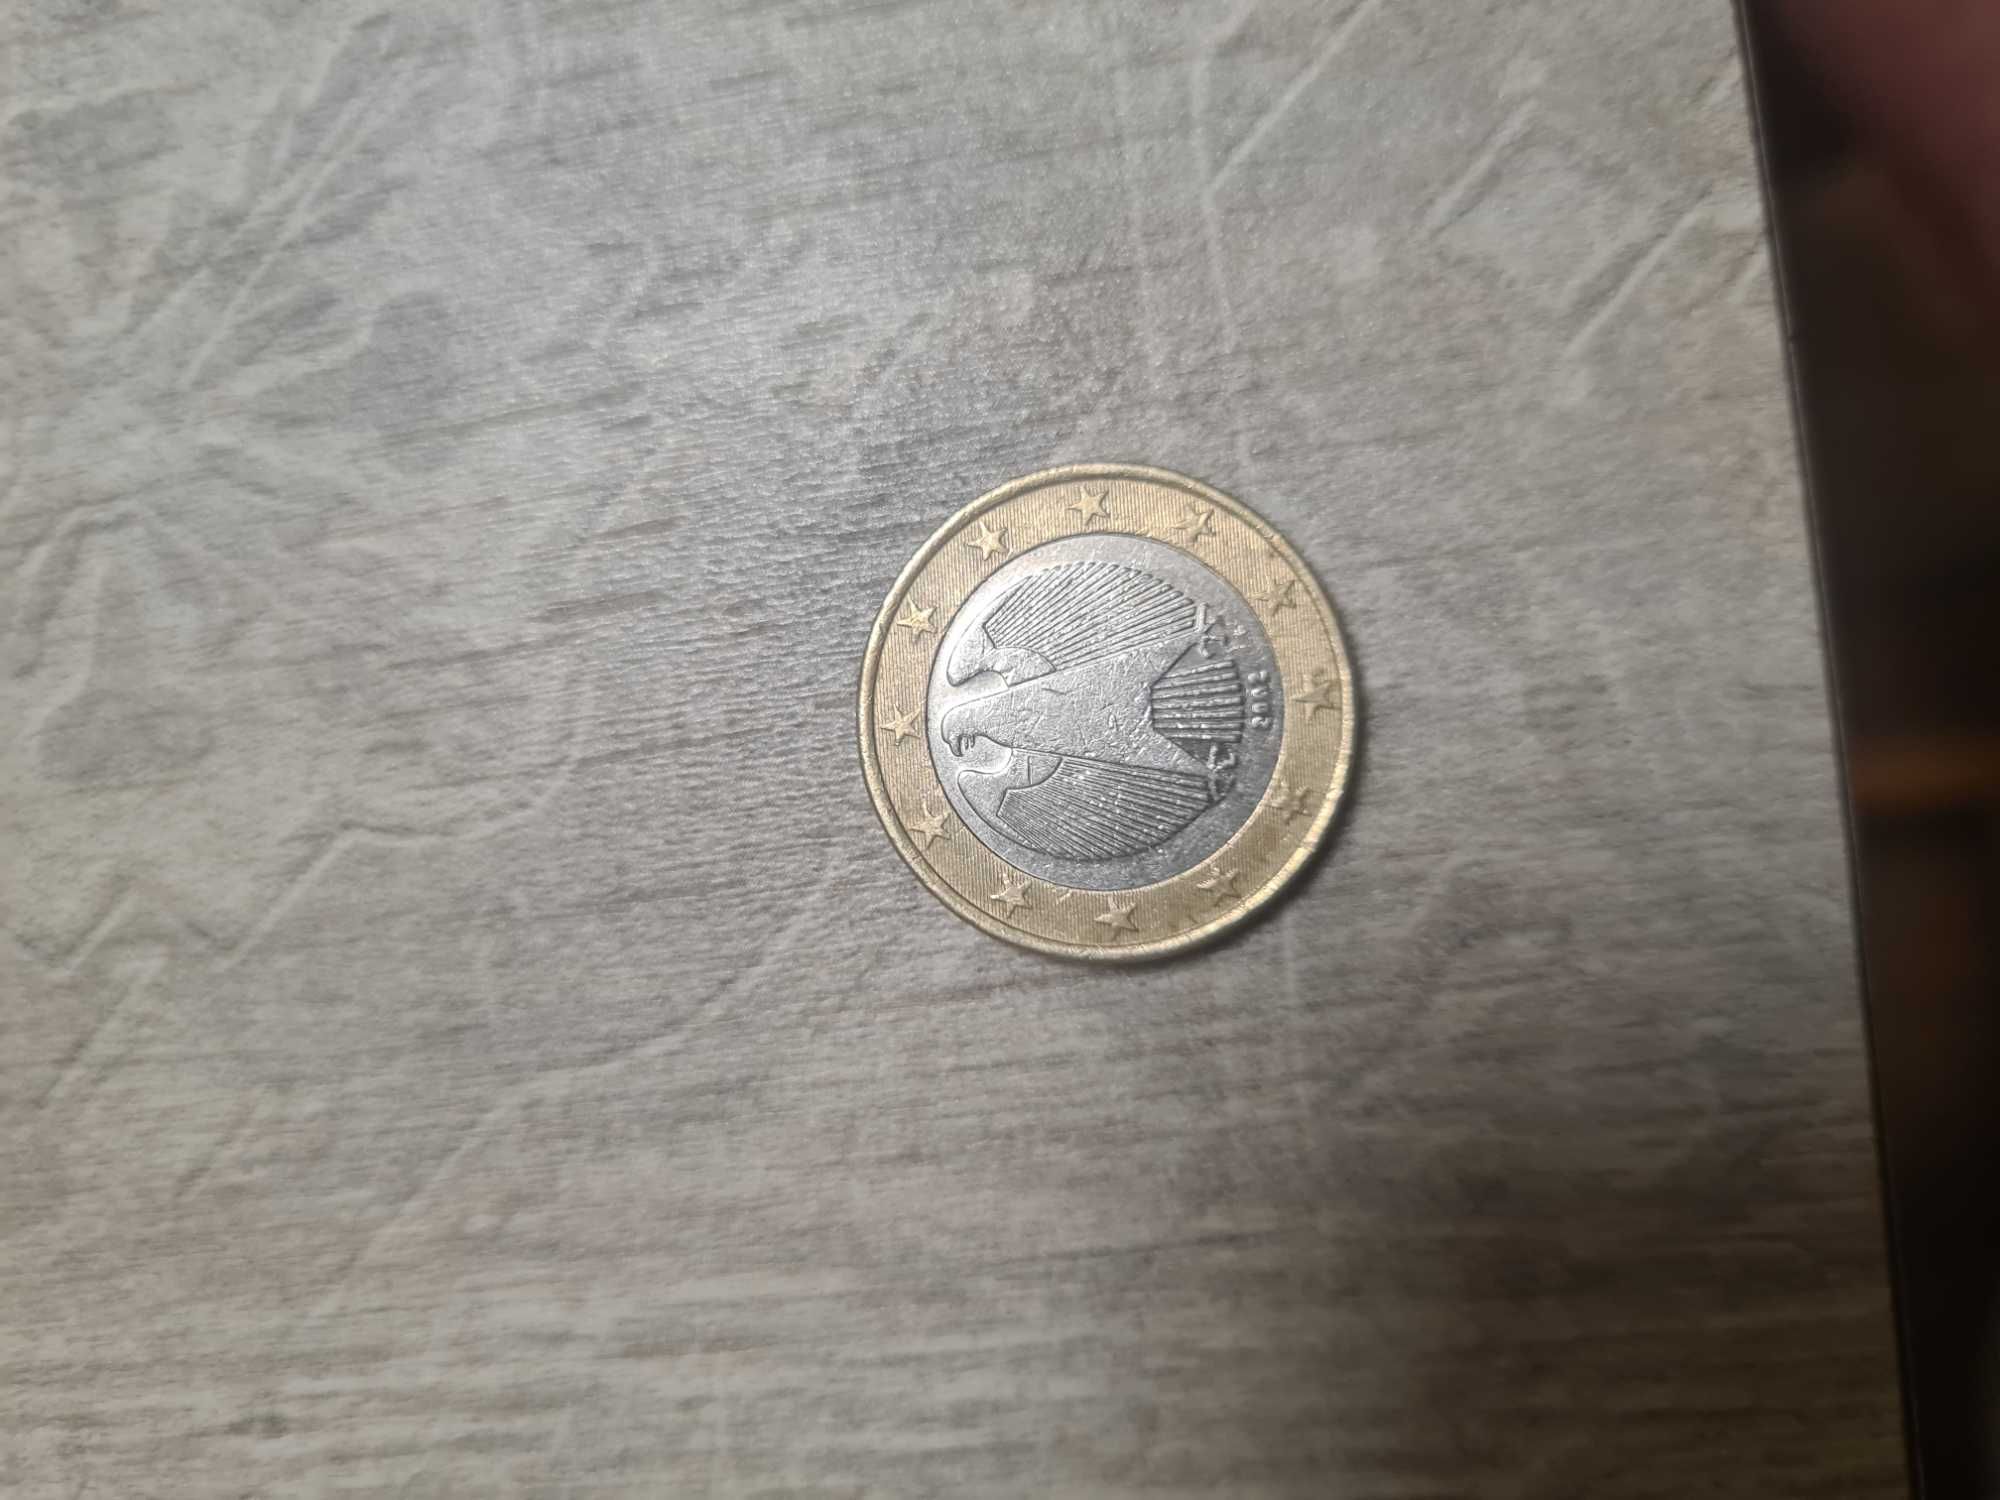 Монета 1 евро от 2002г. Германия